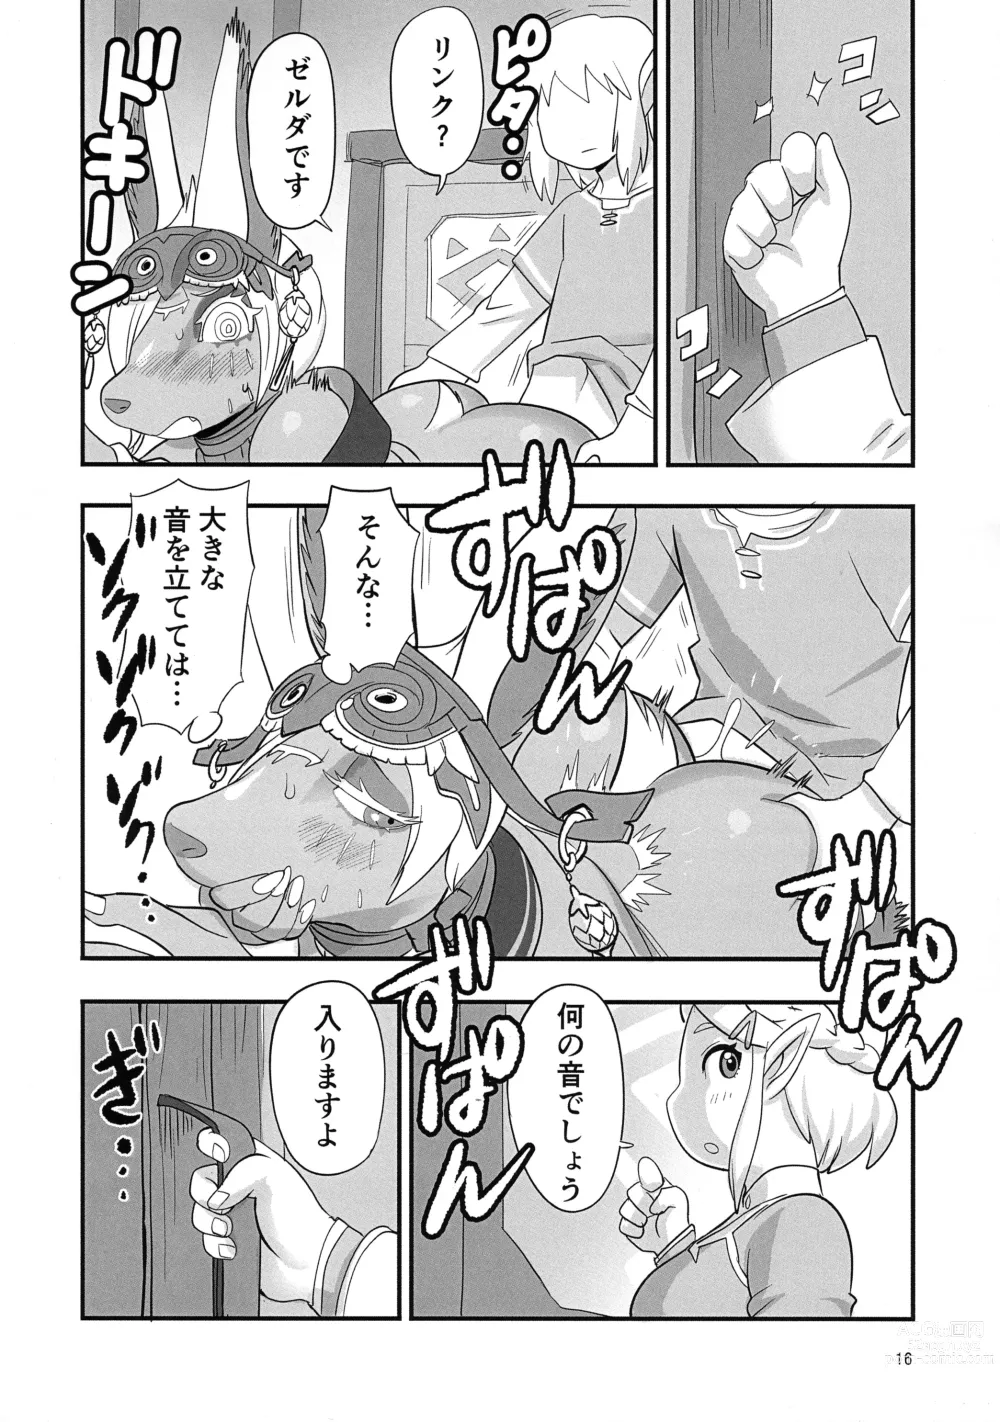 Page 16 of doujinshi Mineru-sama Juniku